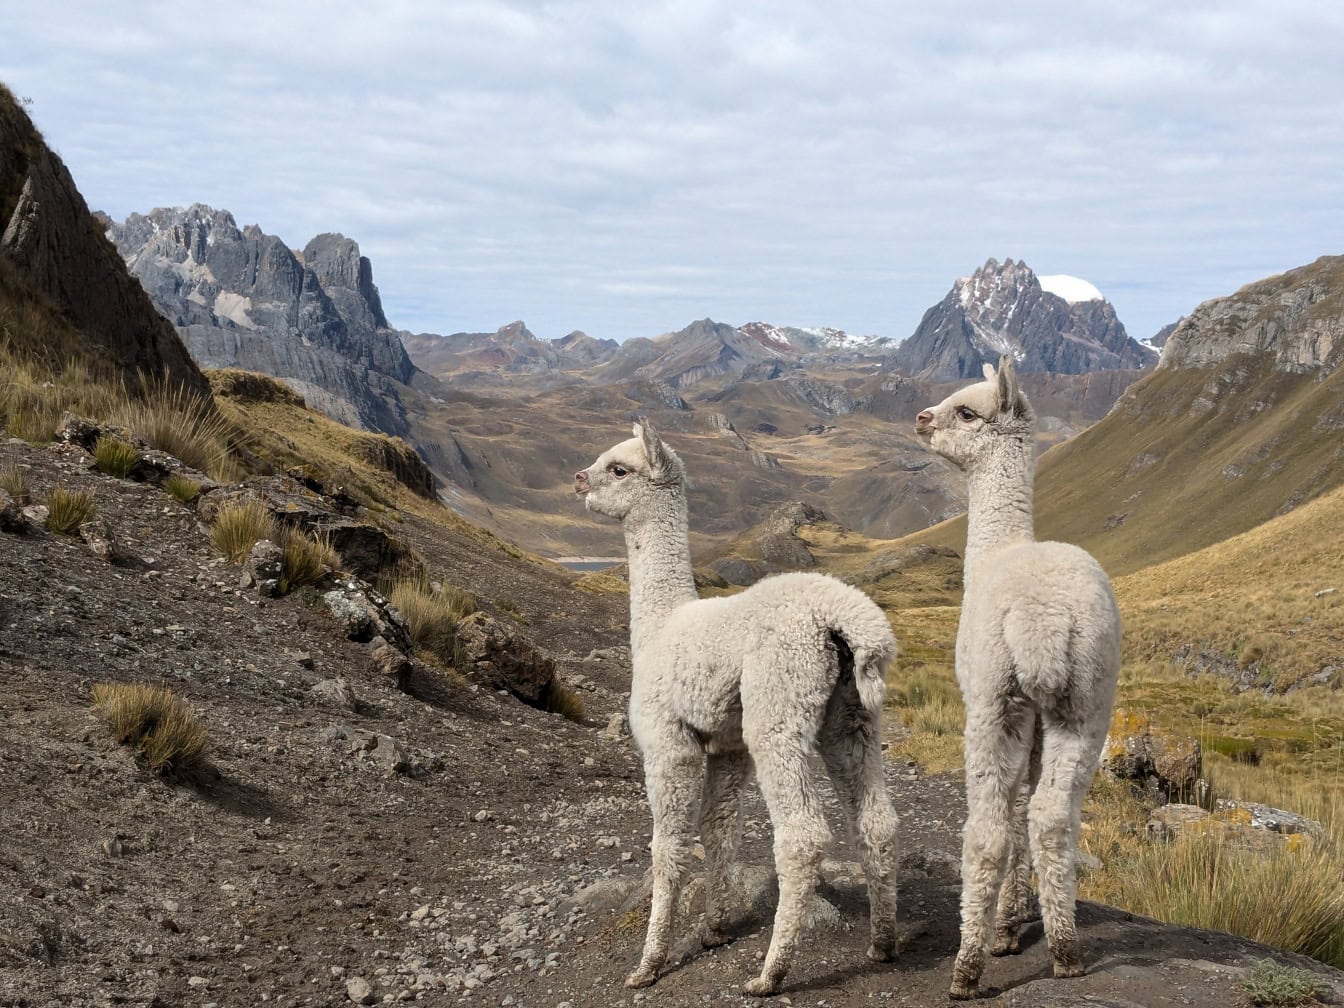 ลามะสีขาวน่ารักสองตัว (Lama glama)อูฐอเมริกาใต้ที่เลี้ยงในบ้านยืนอยู่ในหุบเขาแอนดีส